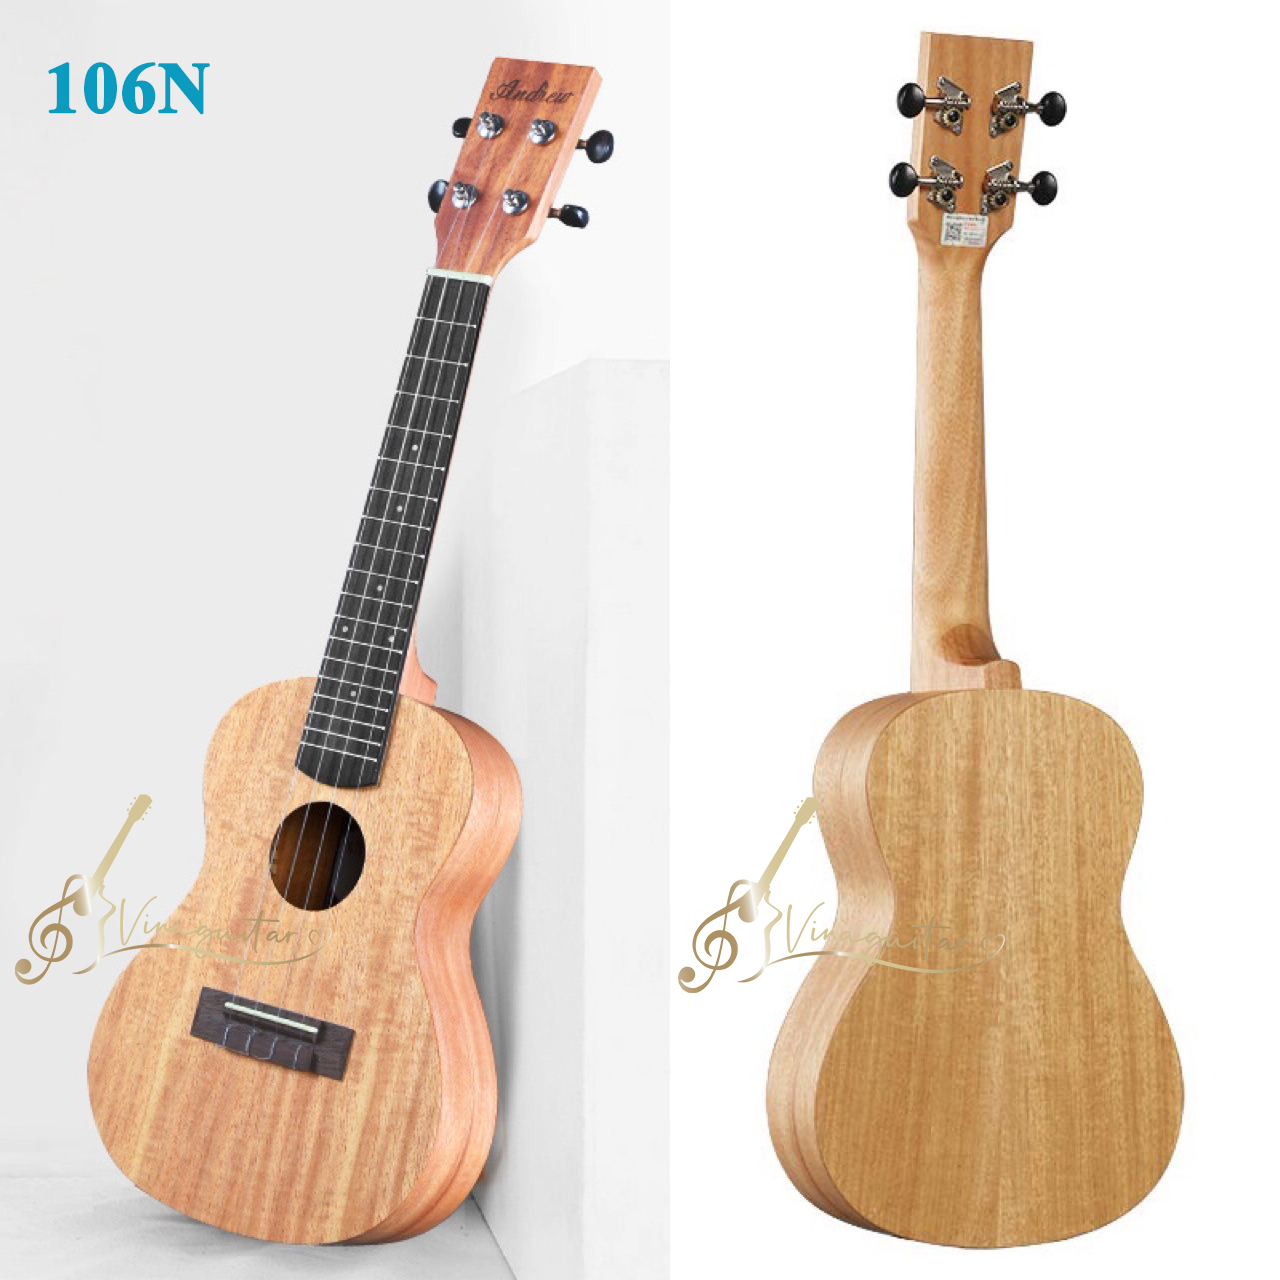 Đàn ukulele concert Andrew CX106N chính hãng - Vinaguitar phân phối